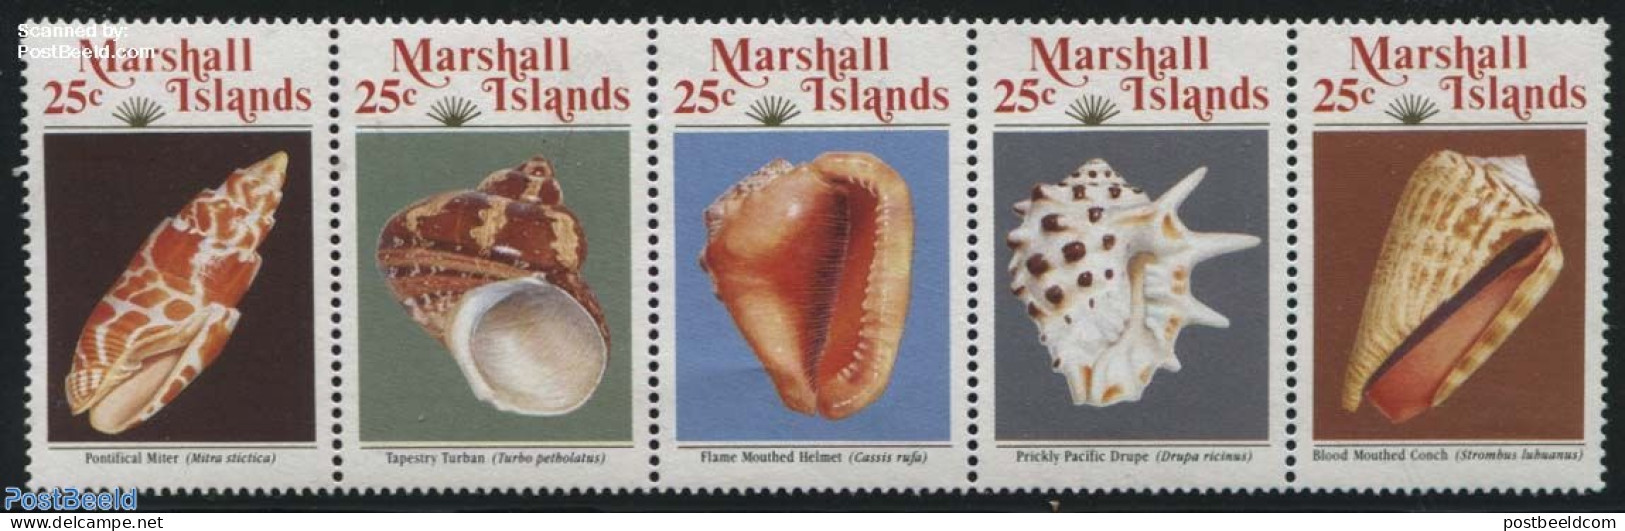 Marshall Islands 1989 Shells 5v [::::], Mint NH, Nature - Shells & Crustaceans - Vita Acquatica